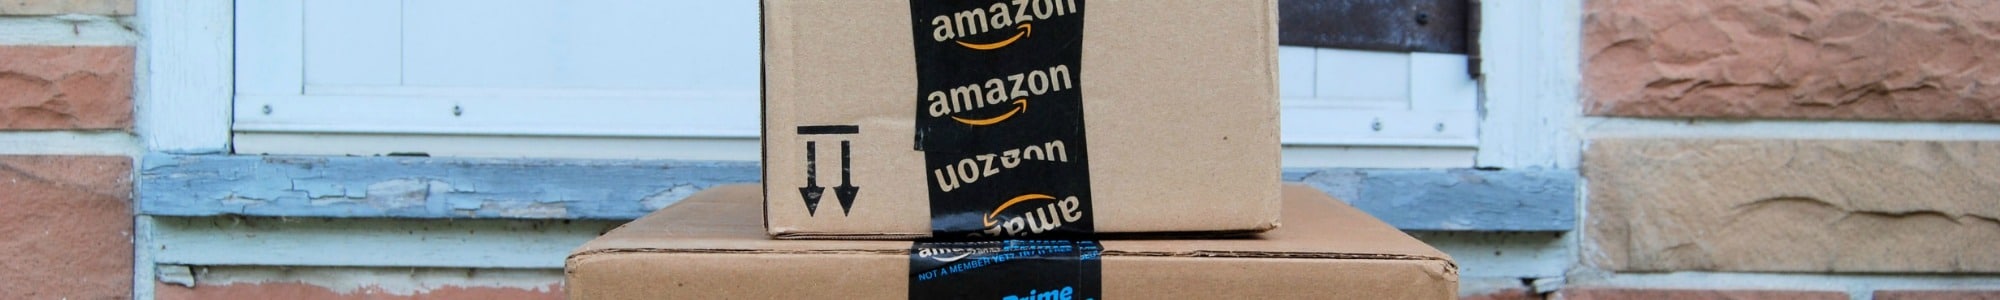 Amazon banner image